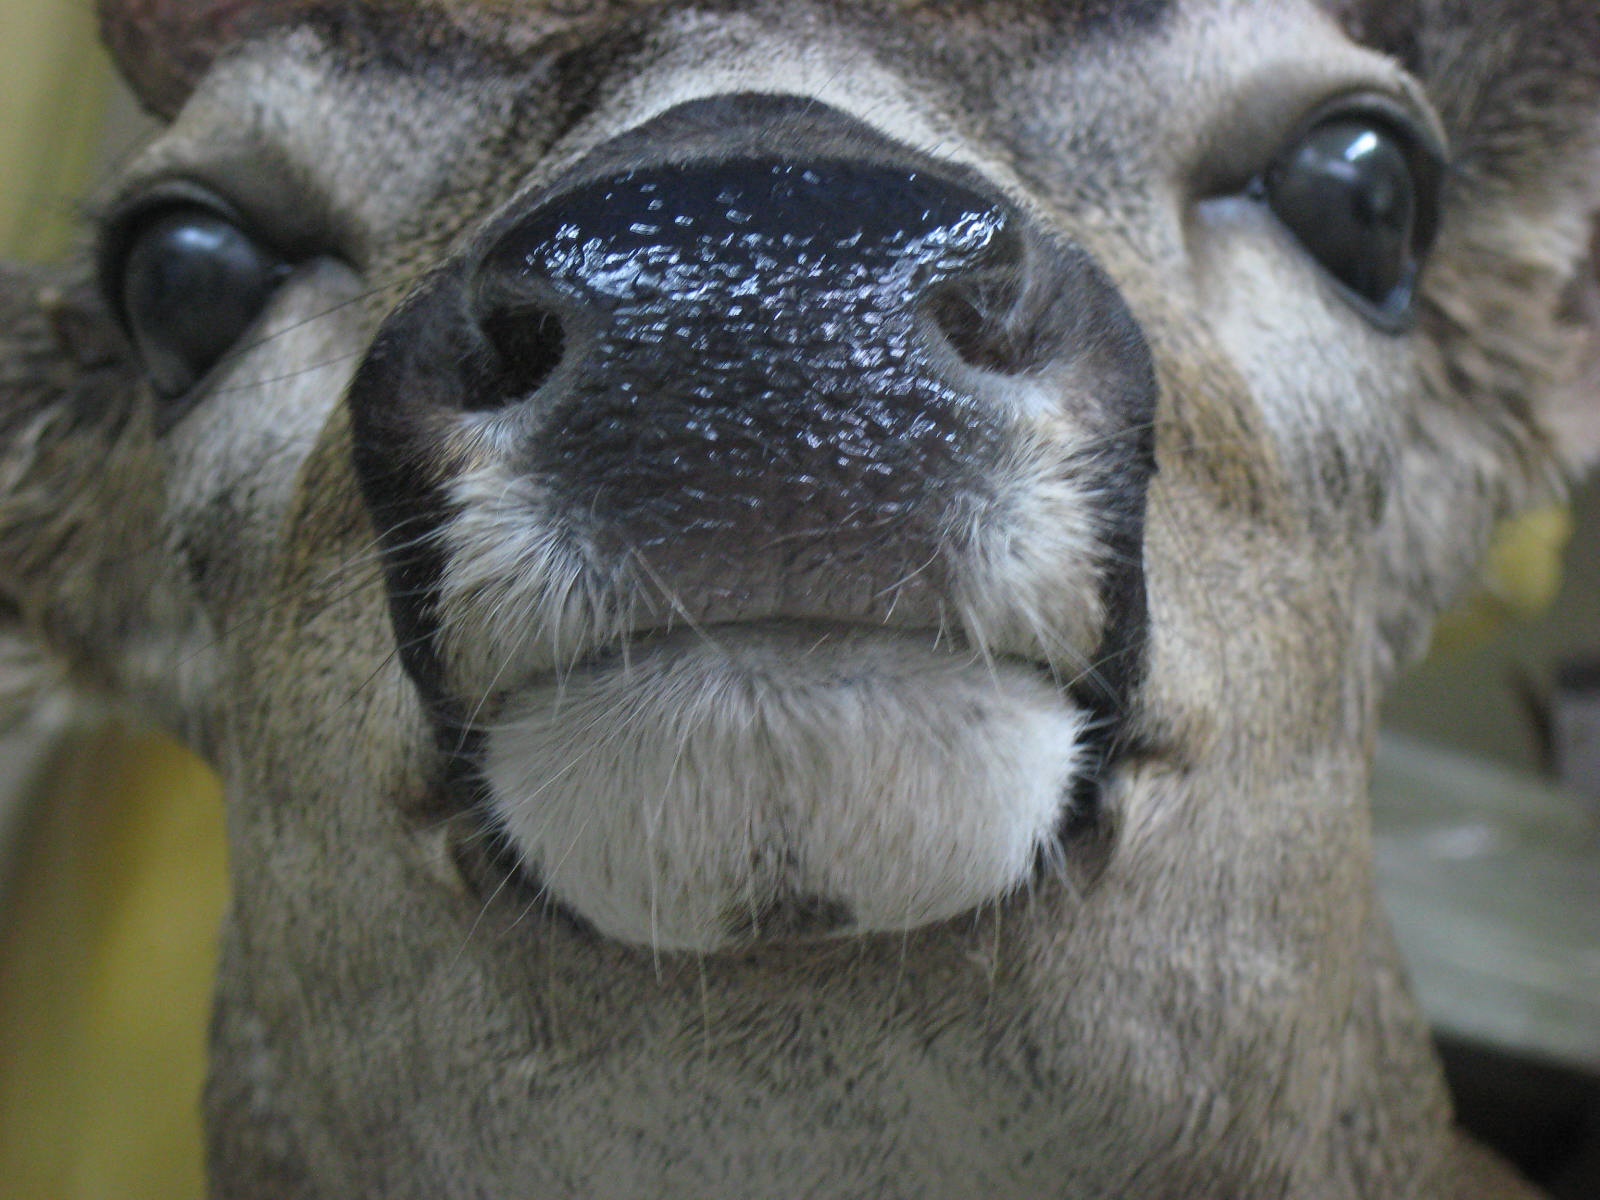 Deer nose photo